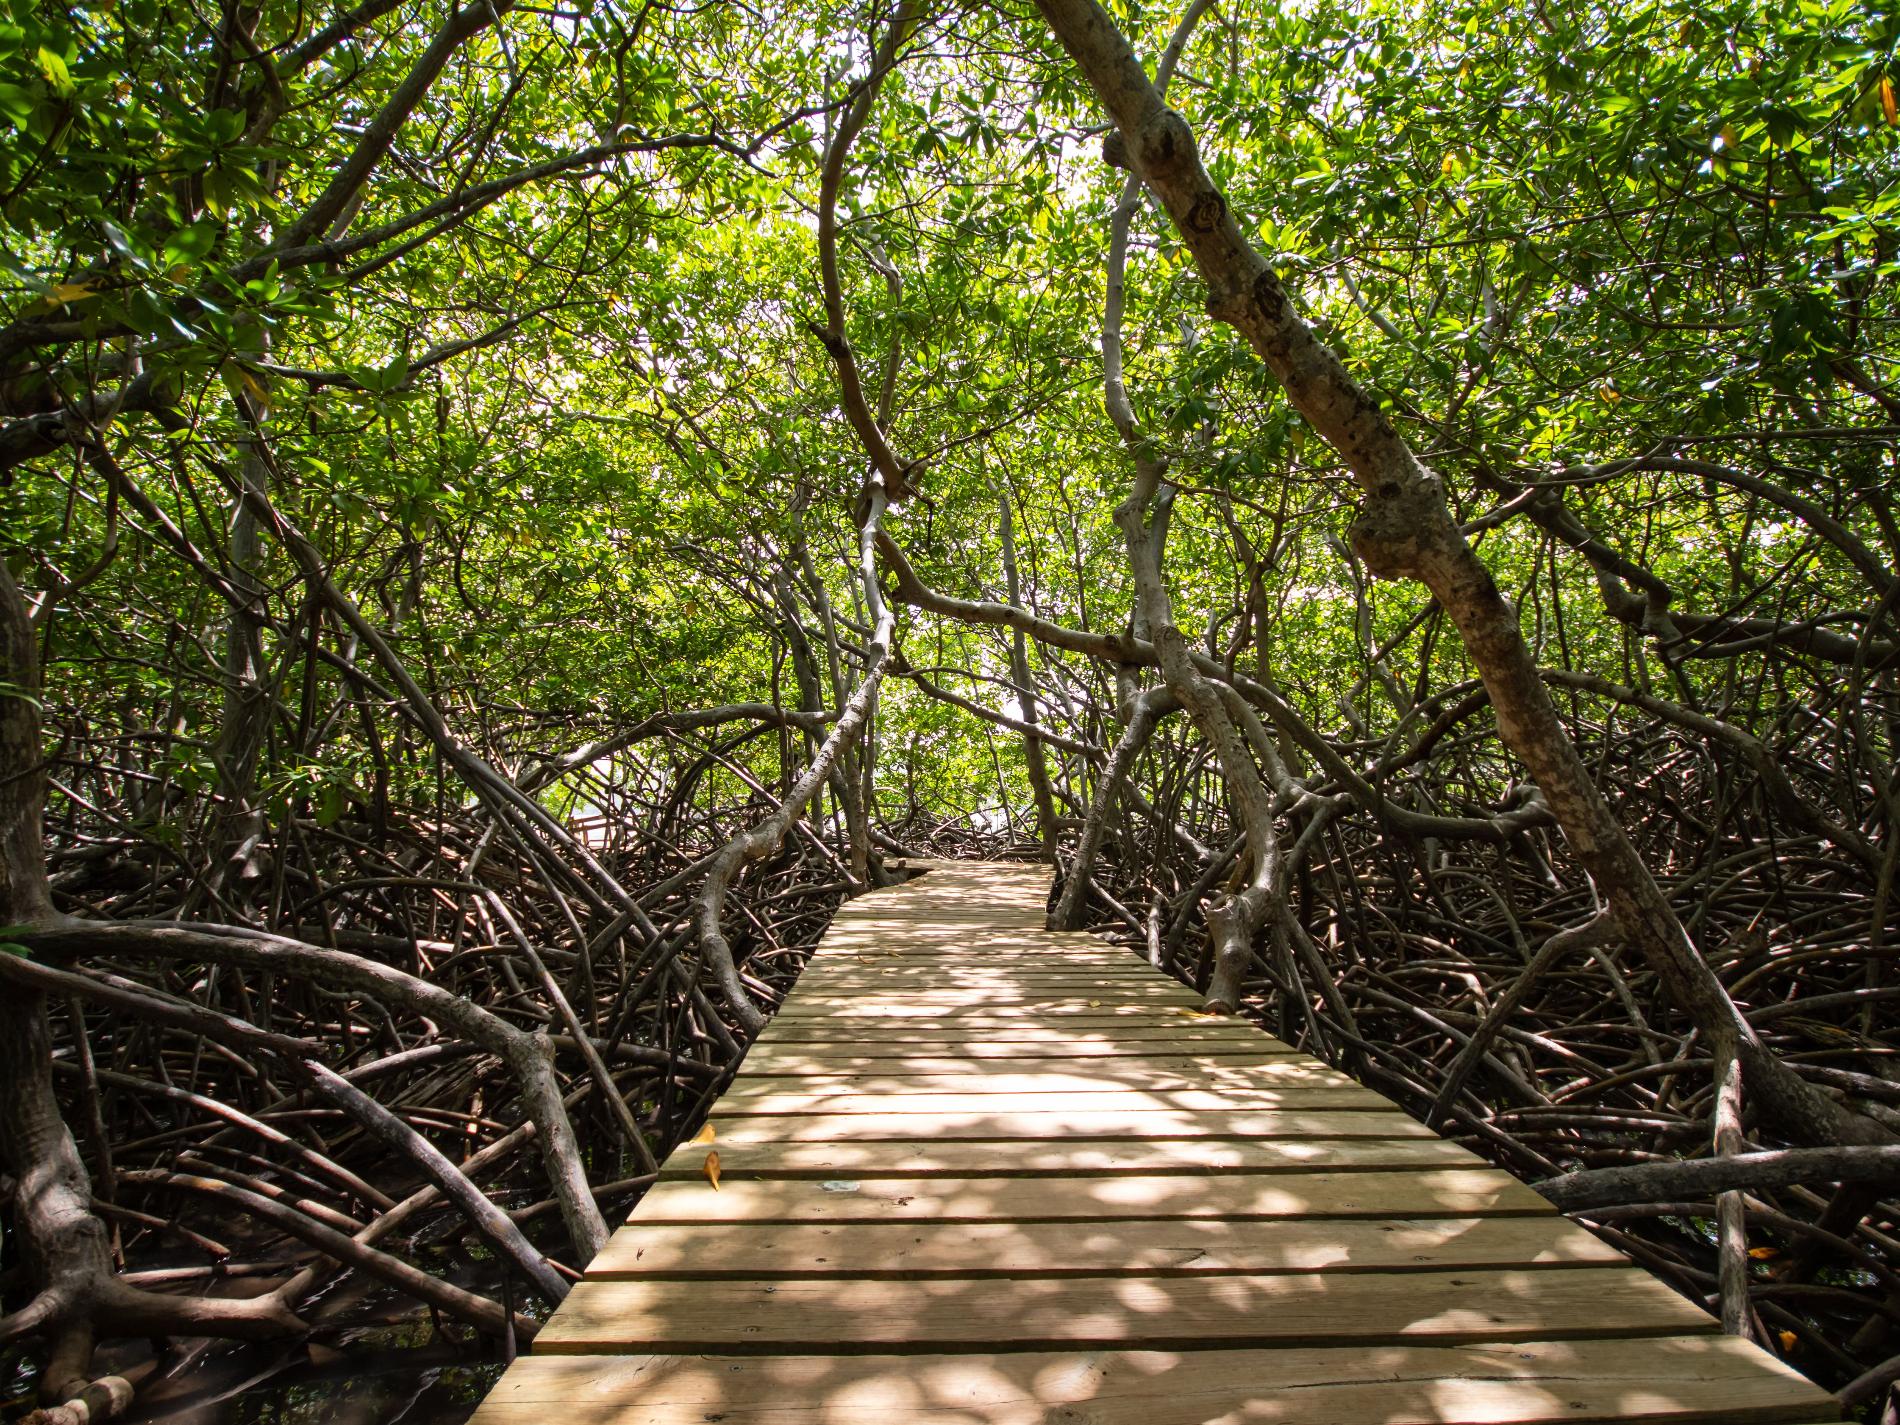 Sentier aménagé dans la mangrove, Martinique © Fabien Lefebvre - Association ACWAA